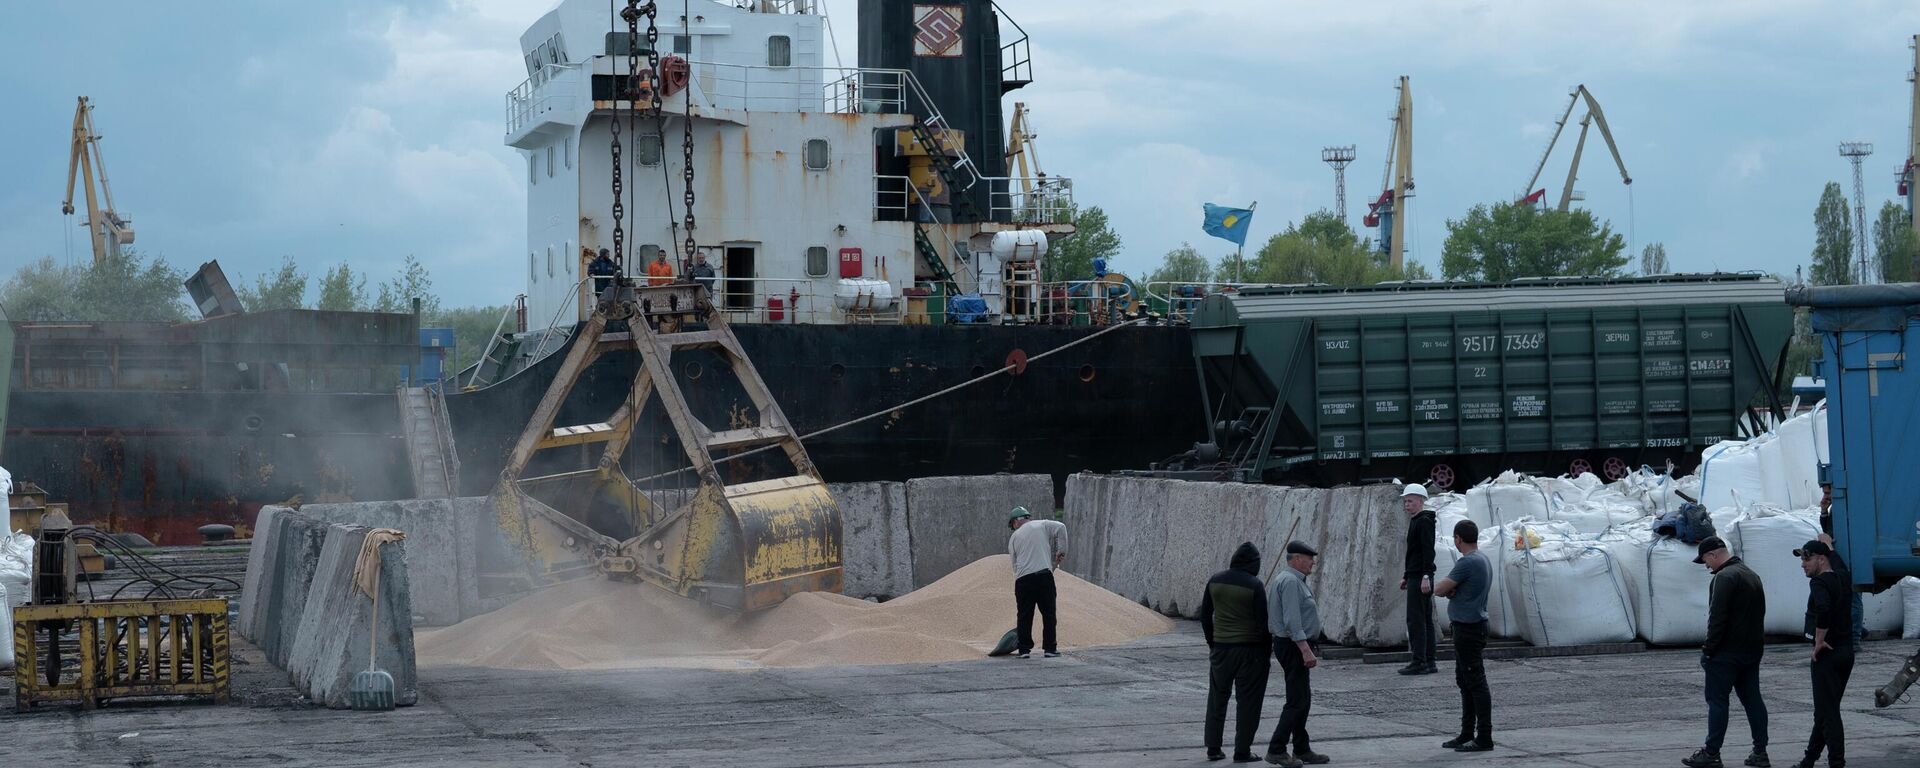 Trabajadores cargan grano en un puerto cerealero de Izmail, Ucrania, el 26 de abril, 2023 - Sputnik Mundo, 1920, 27.08.2023